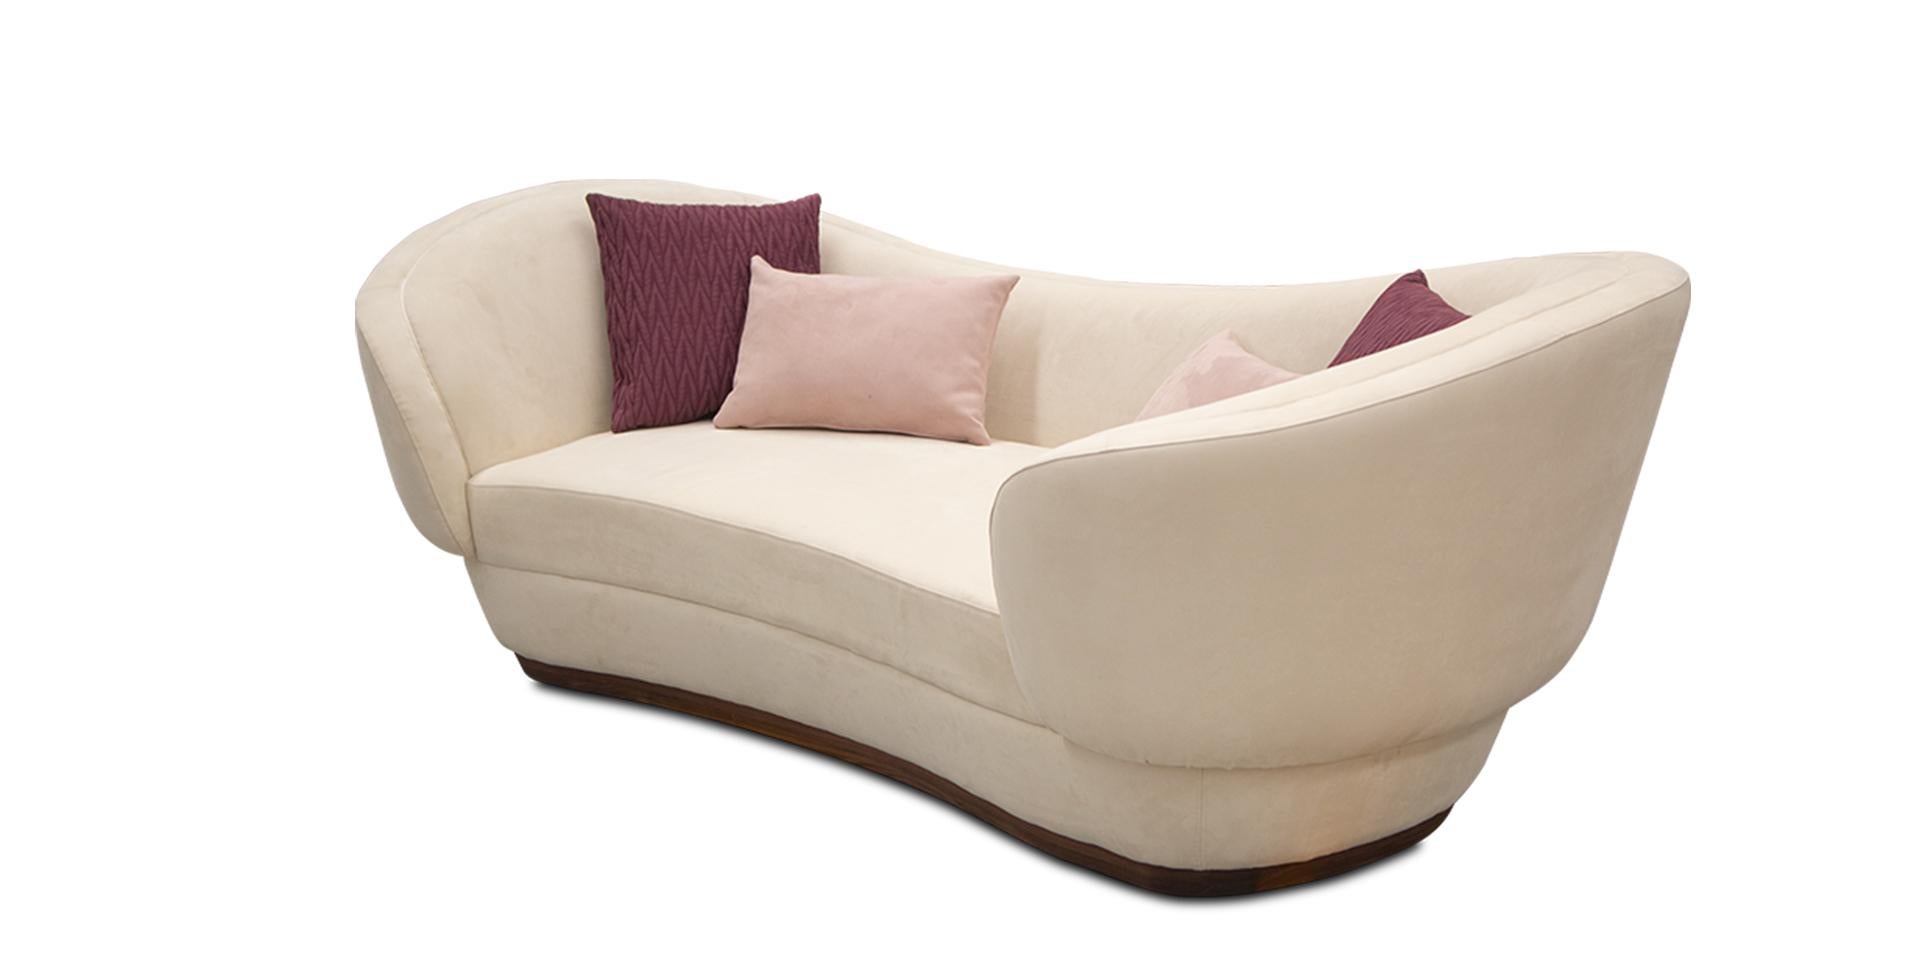 Das Mousgoum-Sofa ist eine Neuinterpretation dieser Architektur, die einen starken Eindruck hinterlässt und ein unvergleichliches Erlebnis bietet. Dieses exquisite Stück verleiht Ihrem Luxus-Wohnzimmer einen atemberaubenden Hauch von Eleganz und